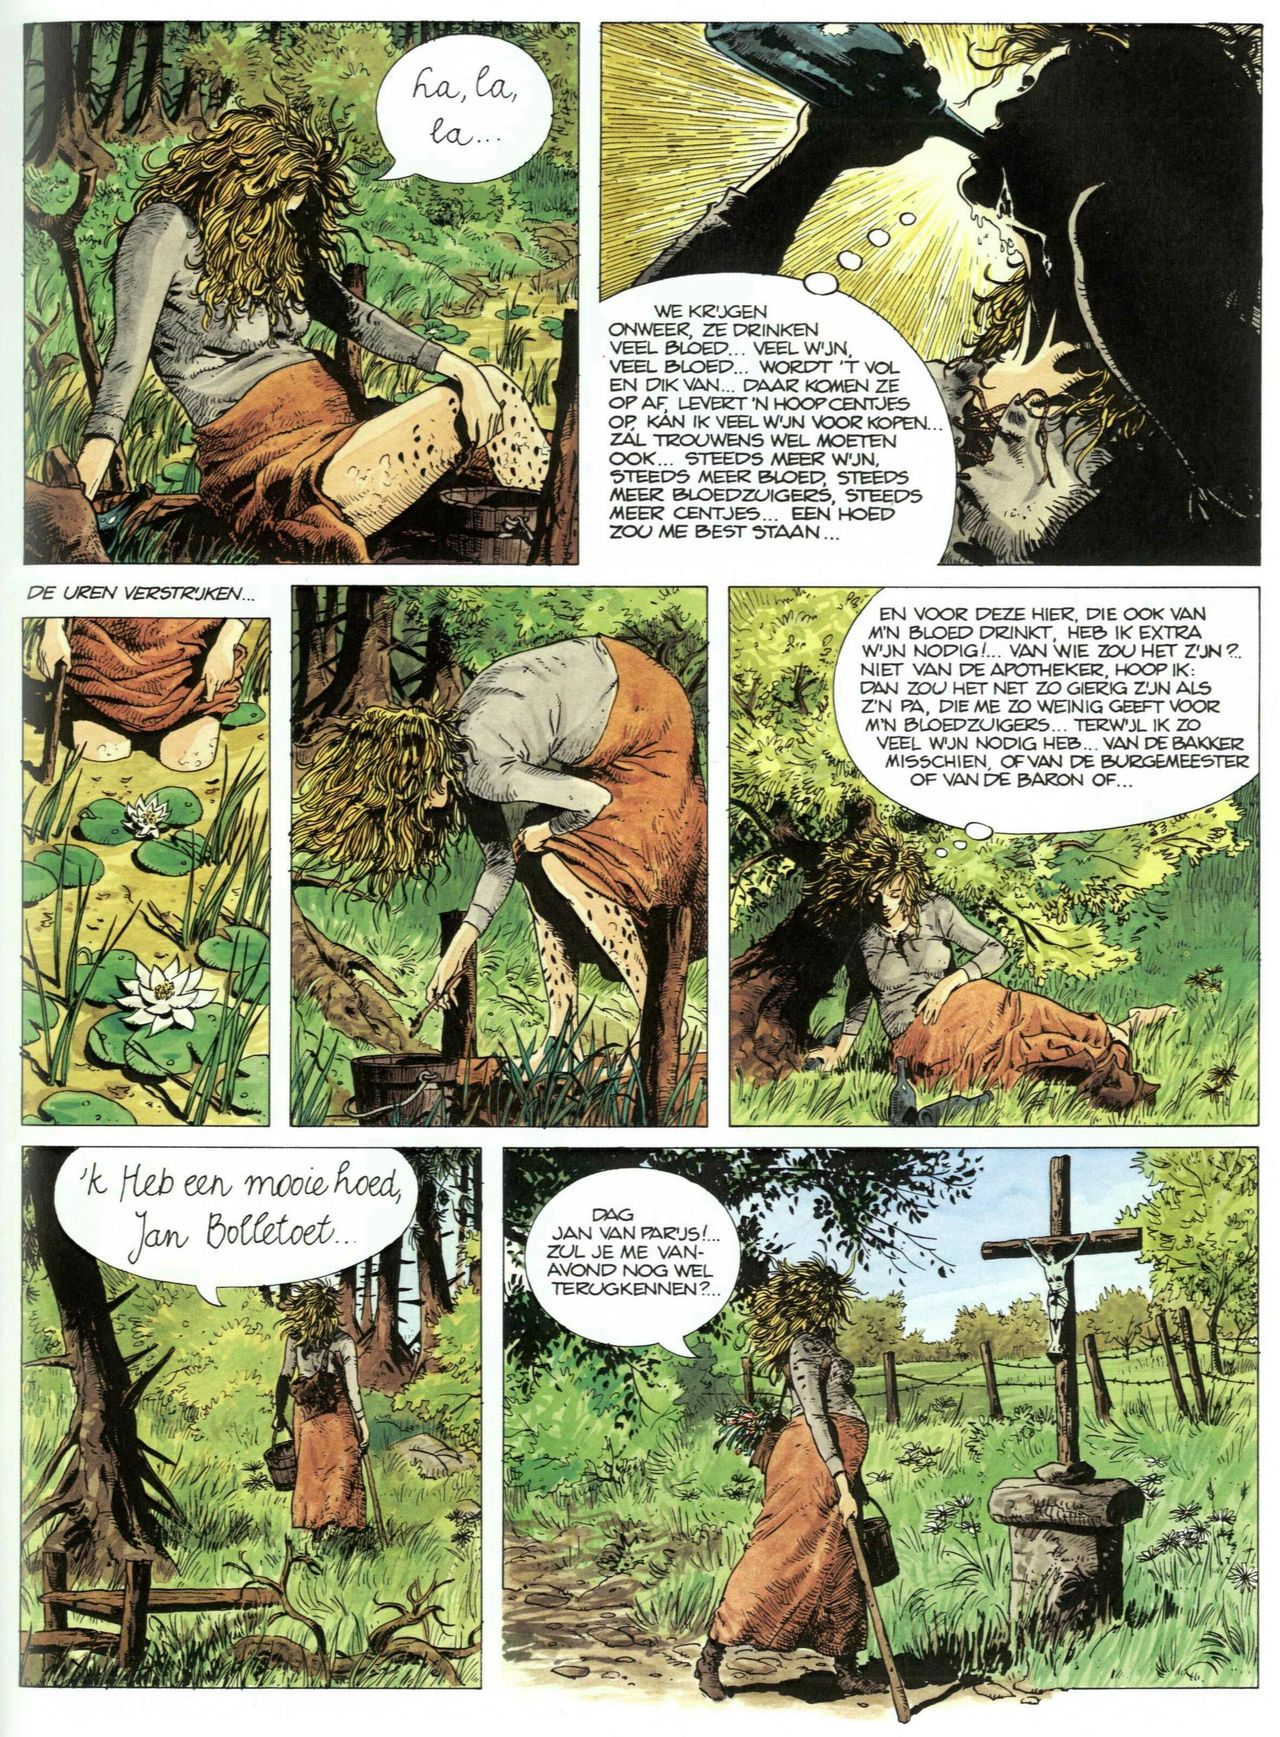 Bosliefje - 01 - Julien (Dutch) Franstalige strips die op deze site staan, hier is de Nederlandse uitgave! 6